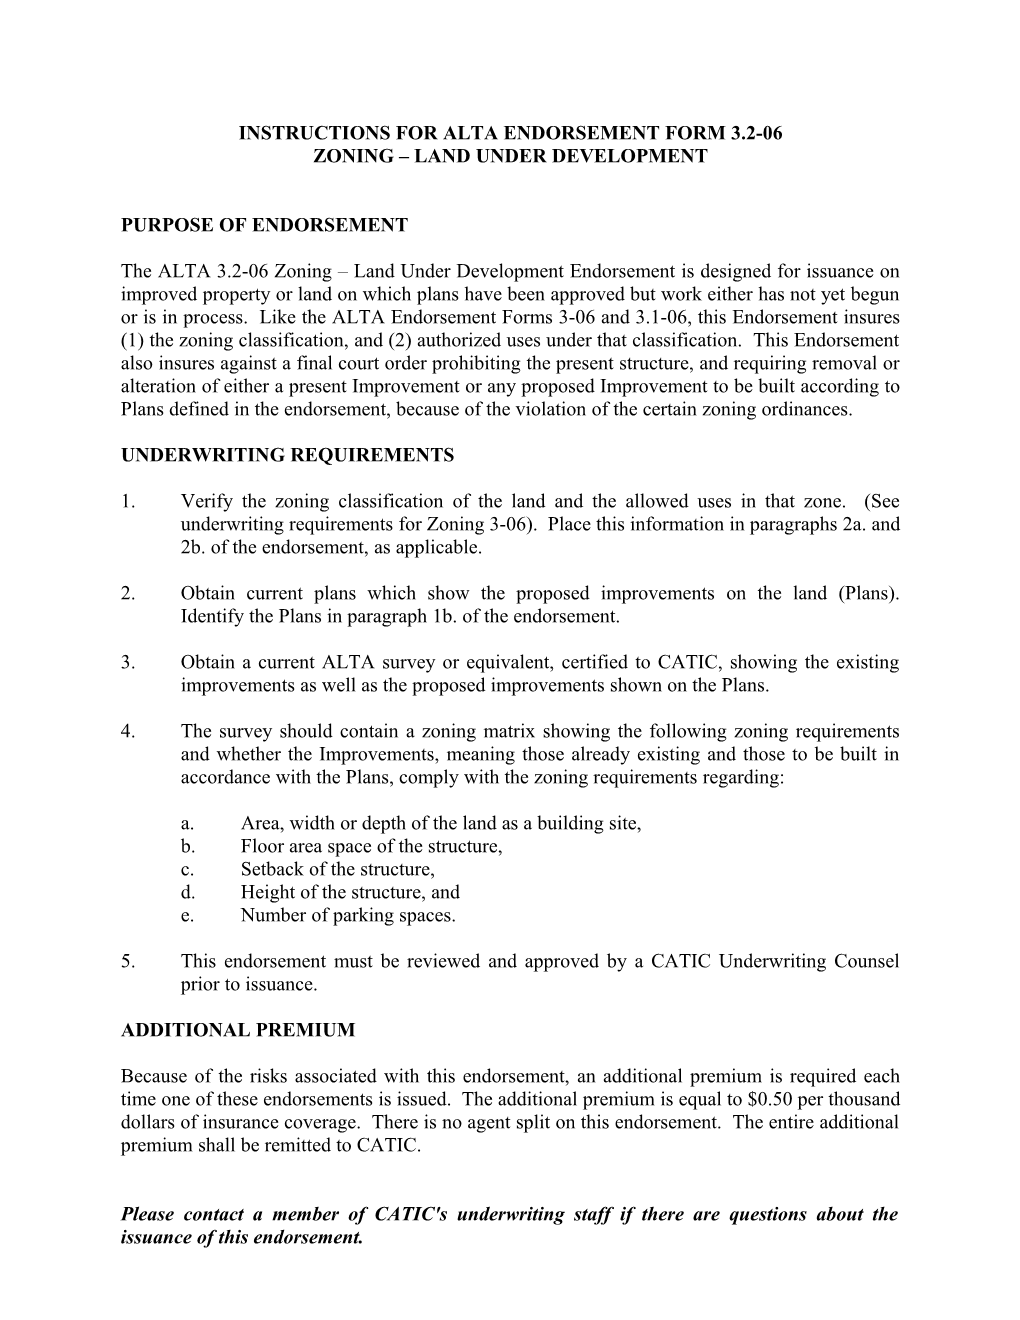 Instructions for Alta Endorsement Form 3.2-06